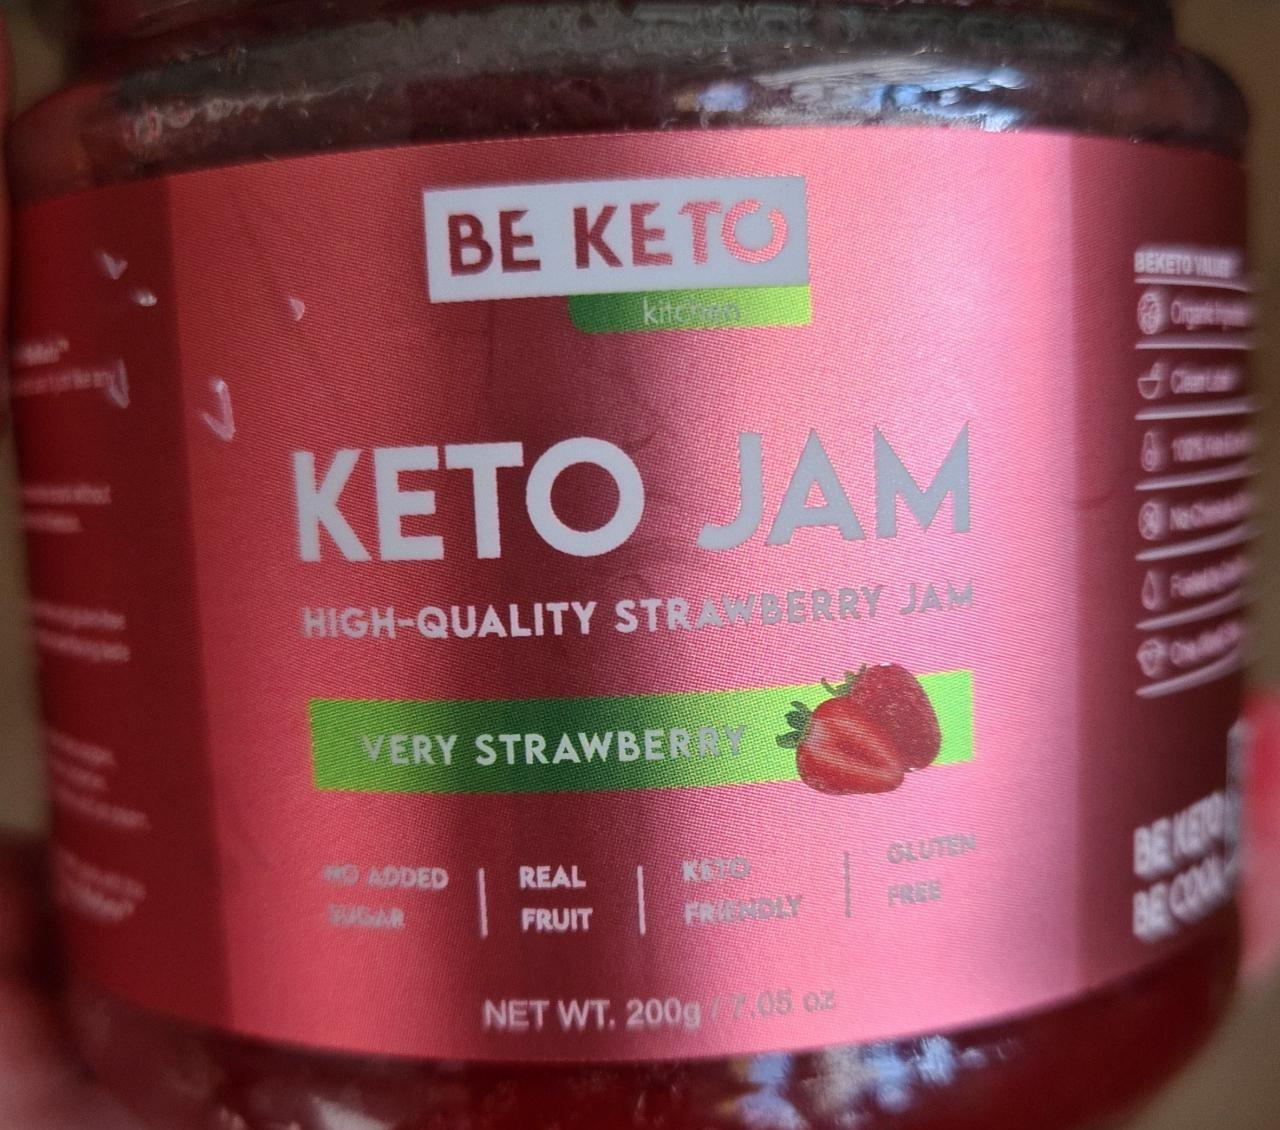 Fotografie - Keto jam very strawberry Be keto